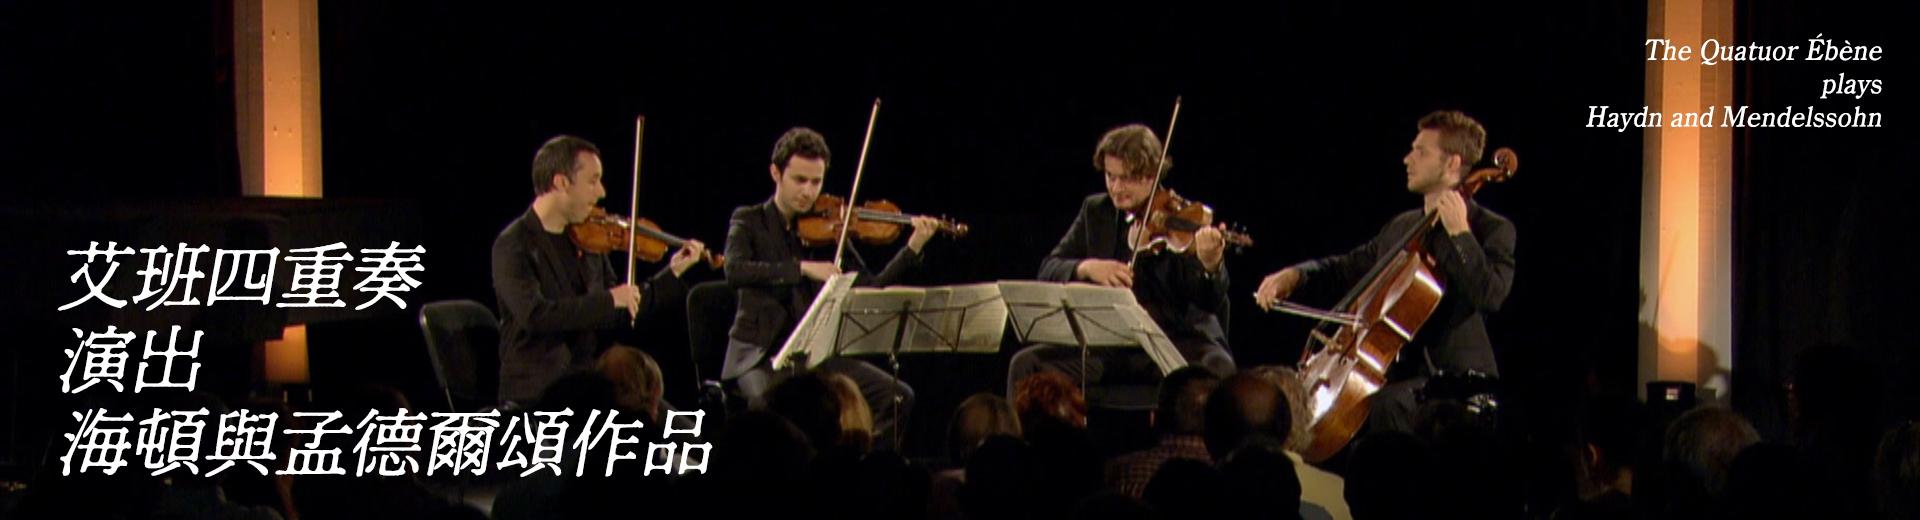 艾班四重奏演出海頓與孟德爾頌作品 The Quatuor Ébène plays Haydn and Mendelssohn